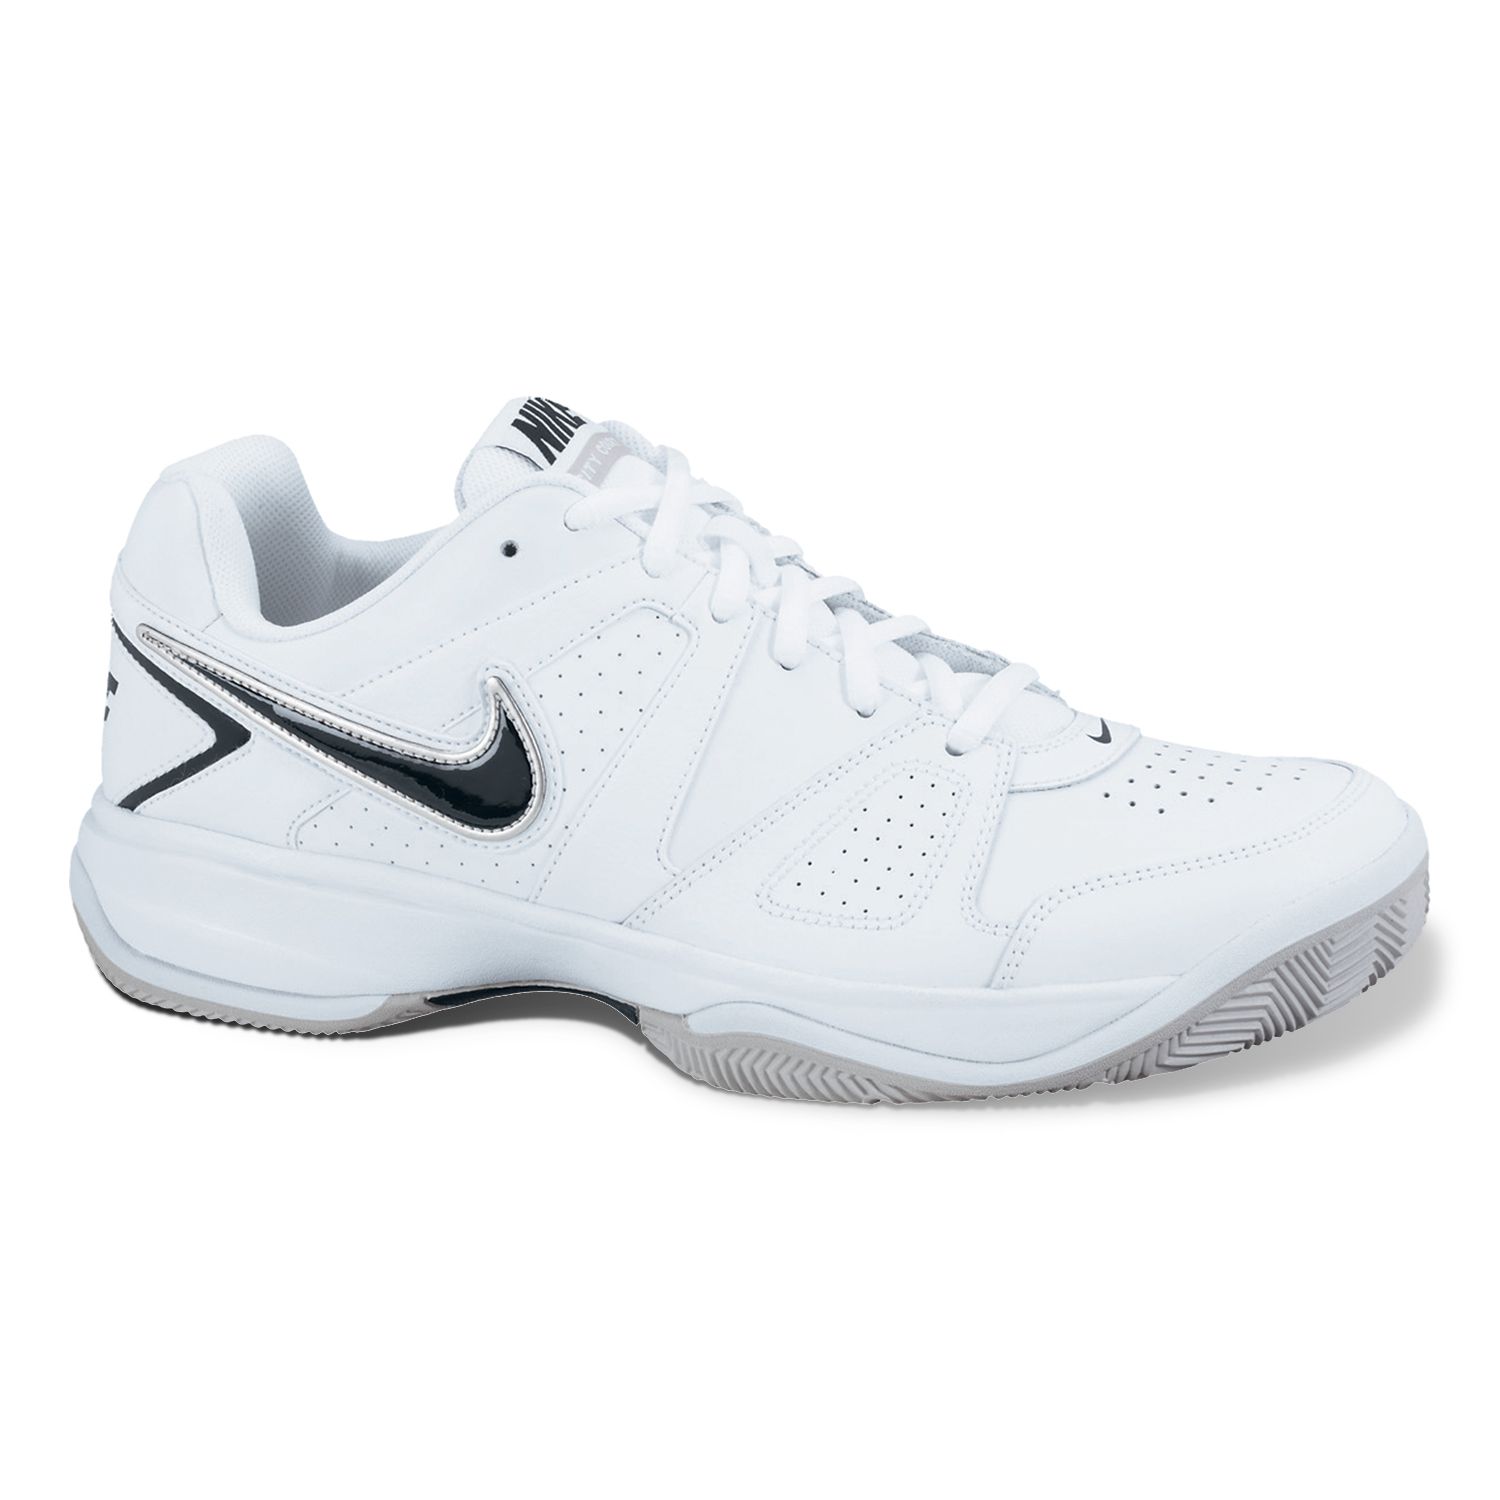 Nike City Court VII Tennis Shoes - Men